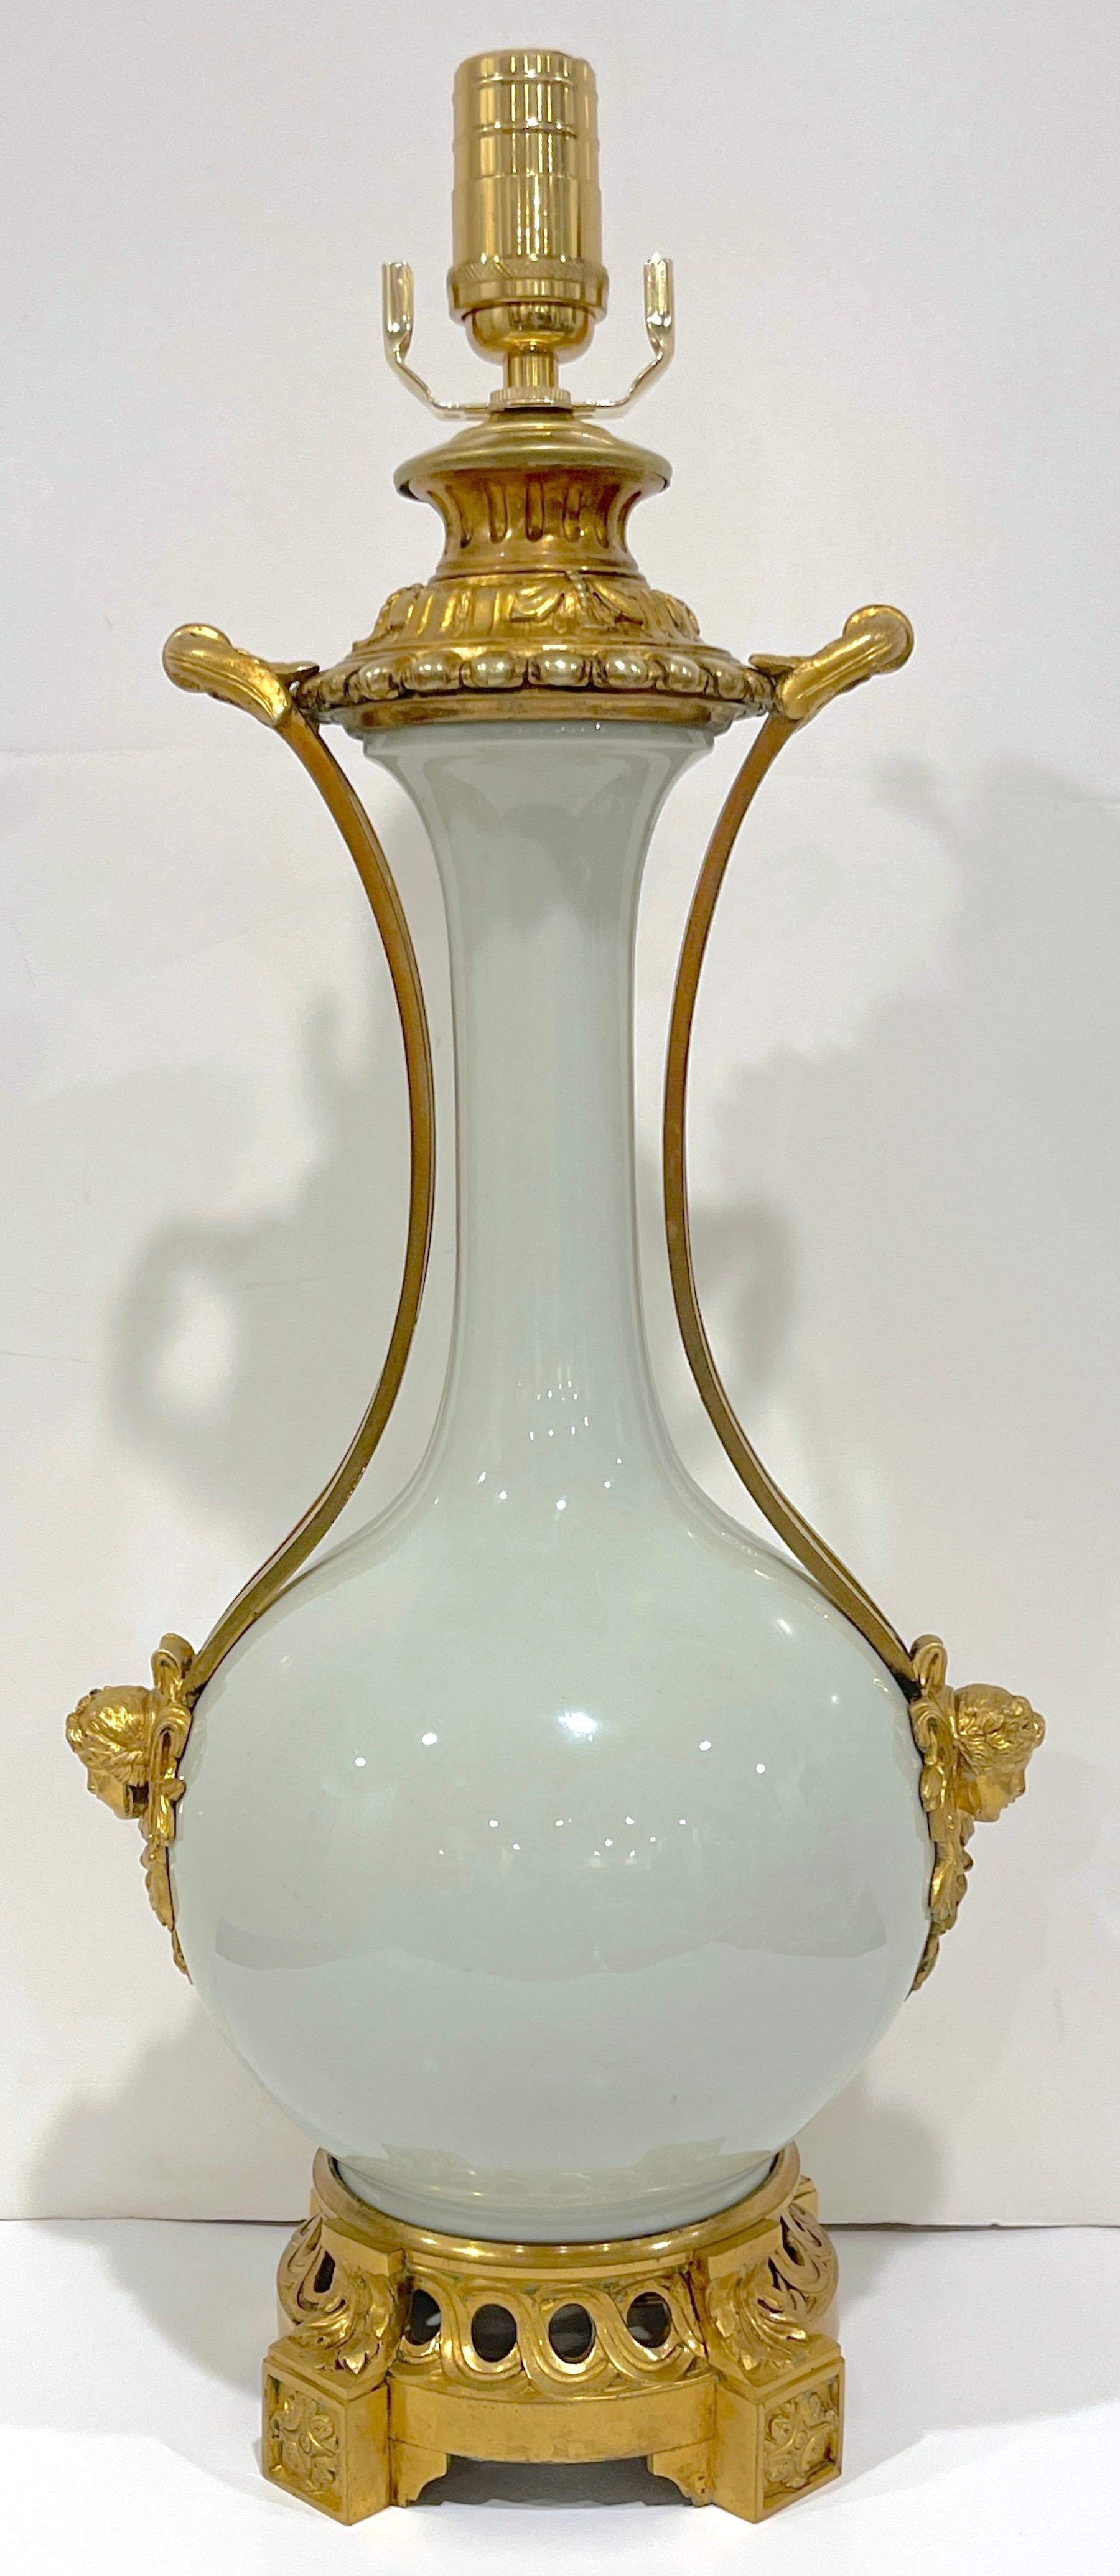 Lampe en porcelaine céladon montée sur bronze doré, style Louis XV, 19e siècle
France, vers les années 1860, aujourd'hui électrifiée, nouvellement câblée.

Cette lampe française de style Louis XV en porcelaine céladon montée en bronze doré, datant